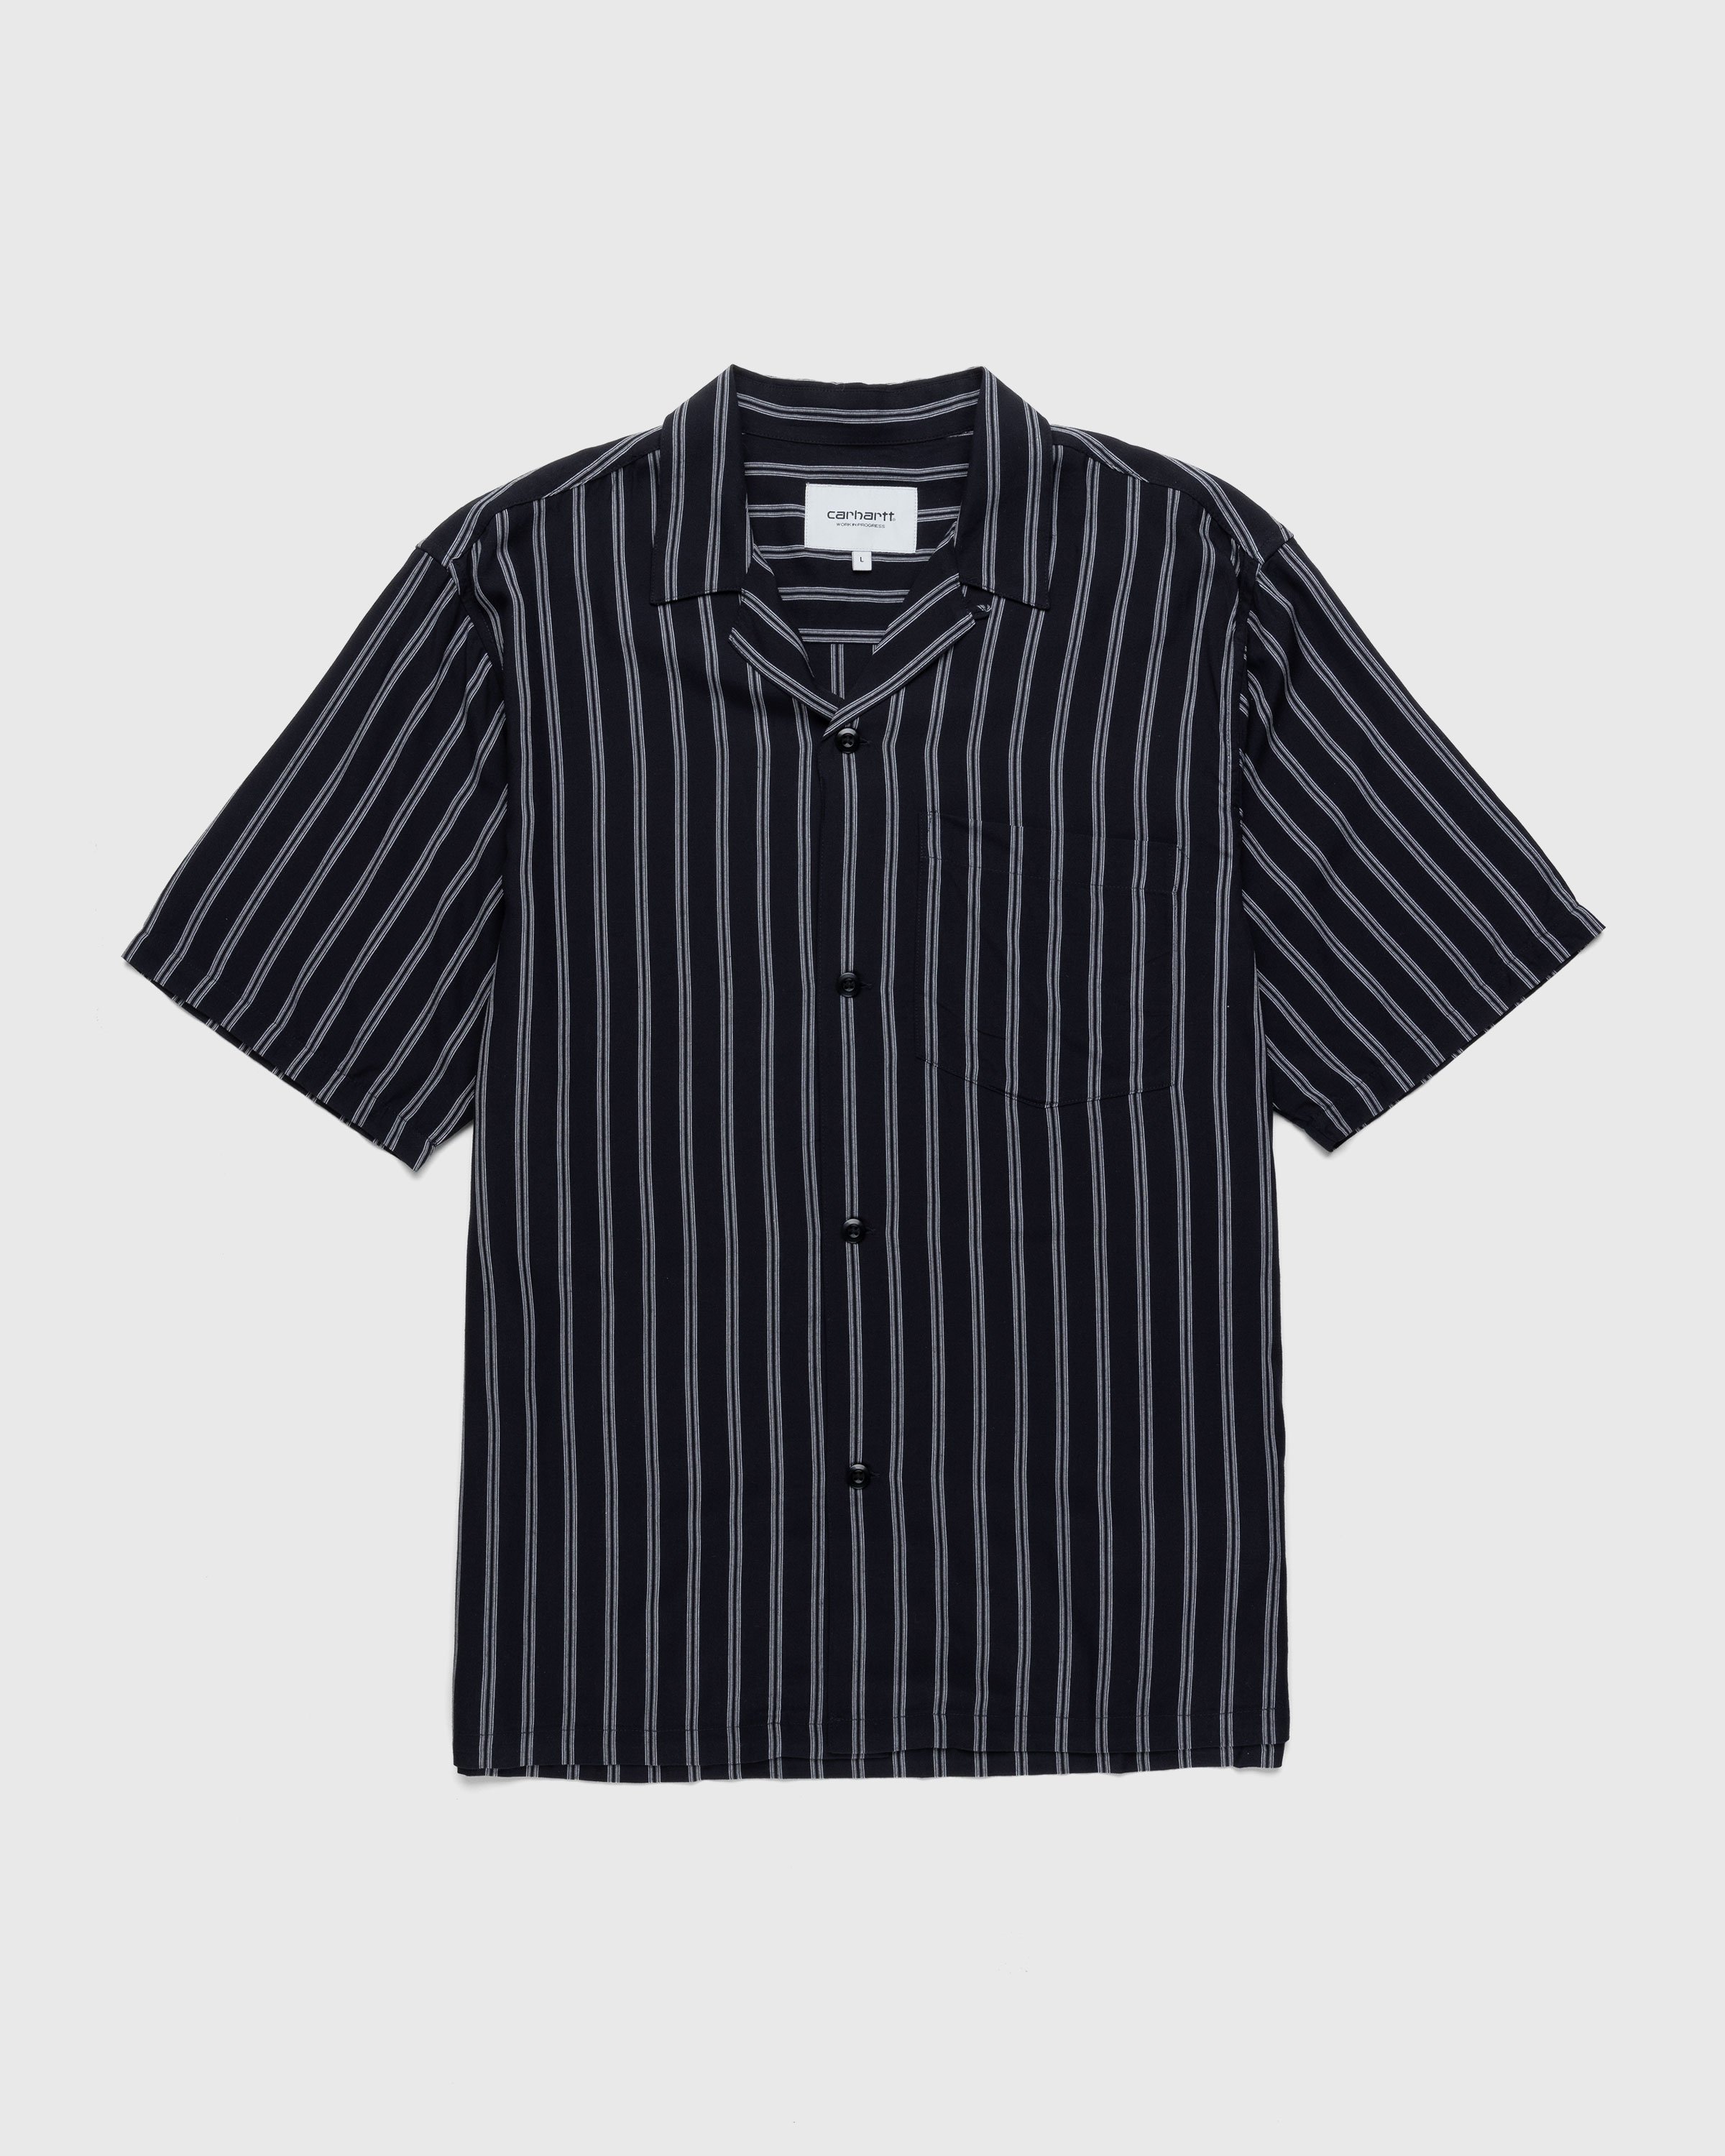 Carhartt WIP - Reyes Stripe Shirt Black - Clothing - Black - Image 1